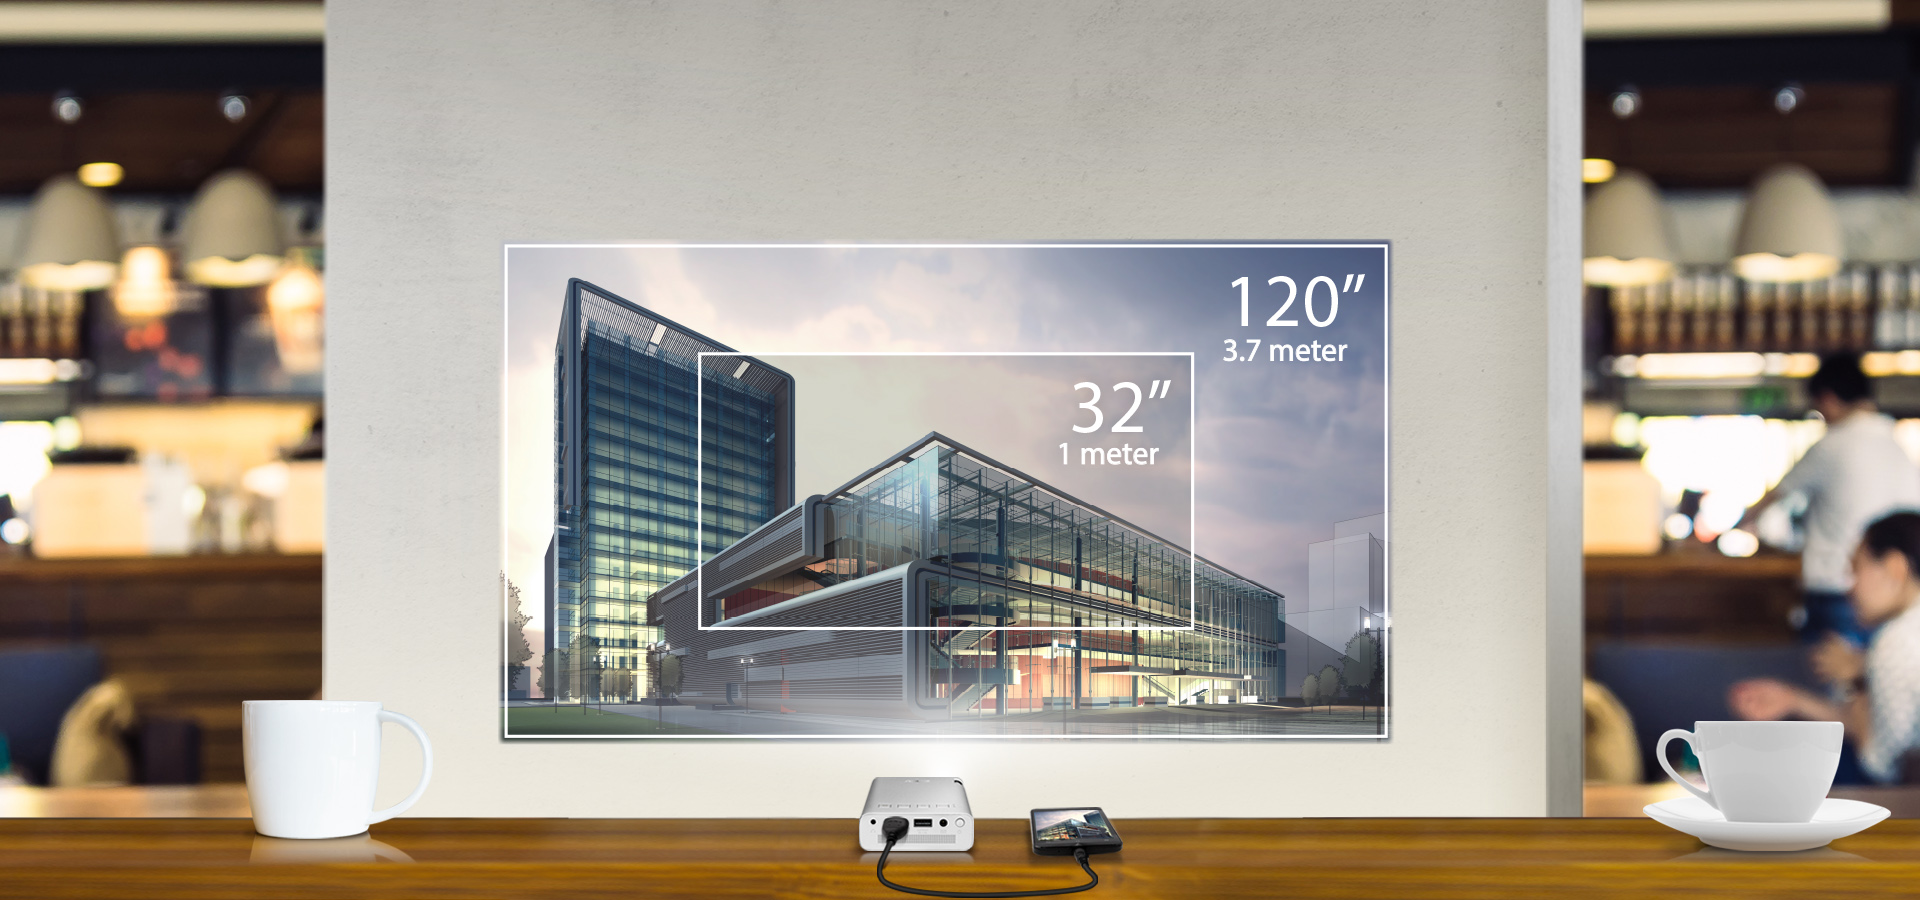 ASUS ZenBeam puede proyectar una pantalla de 32 pulgadas en 1 metro y una pantalla de 120 pulgadas en 3.7 metros